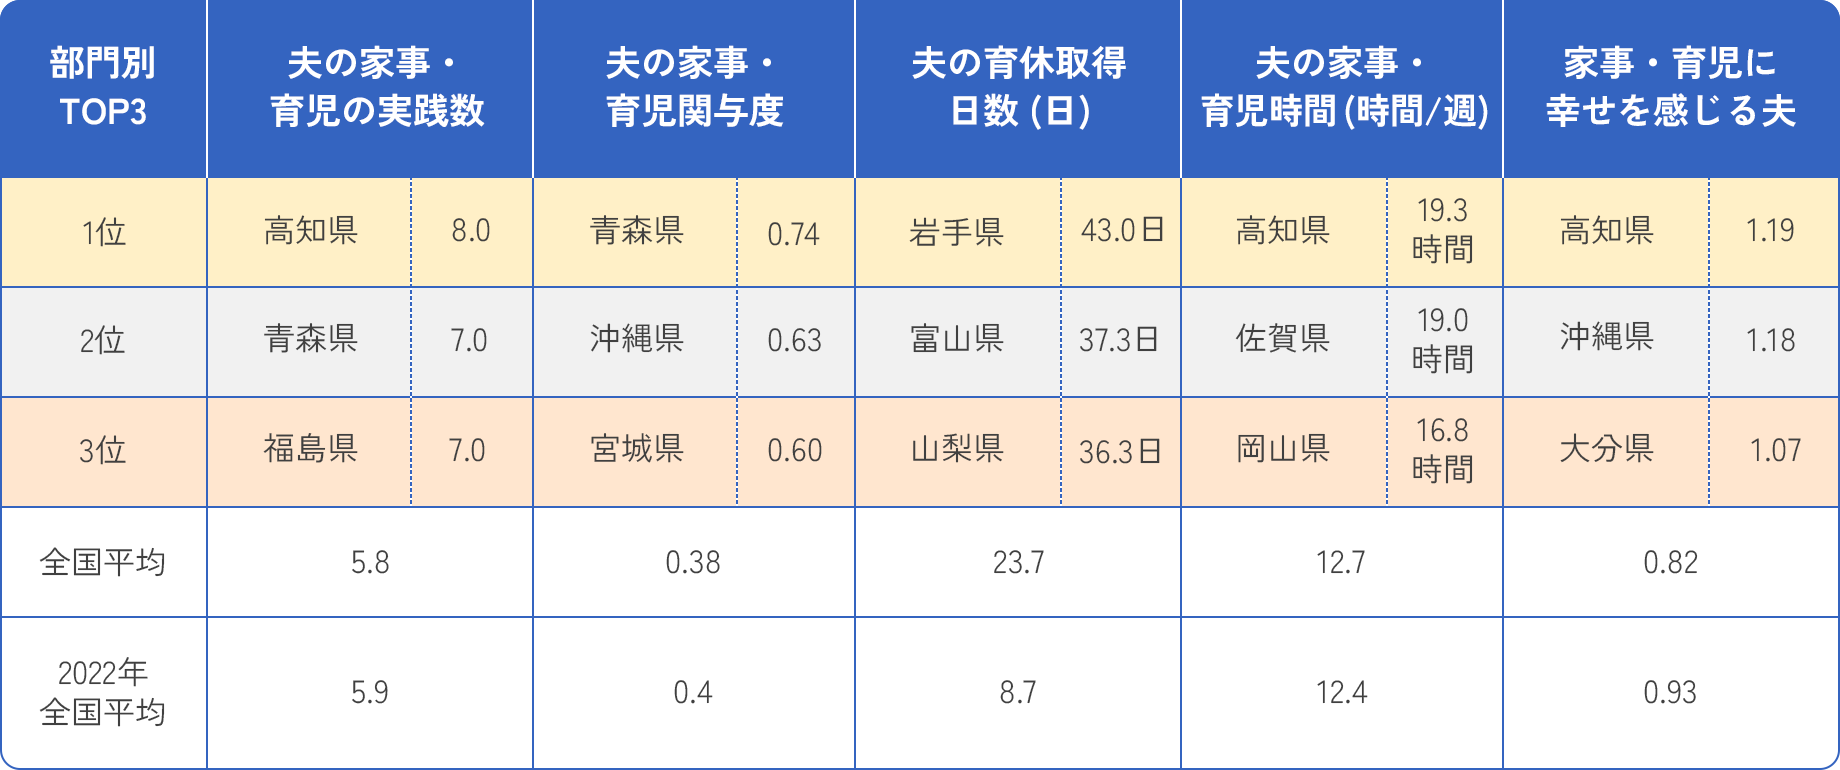 部門別ランキング3位までの都道府県と全国平均のスコア